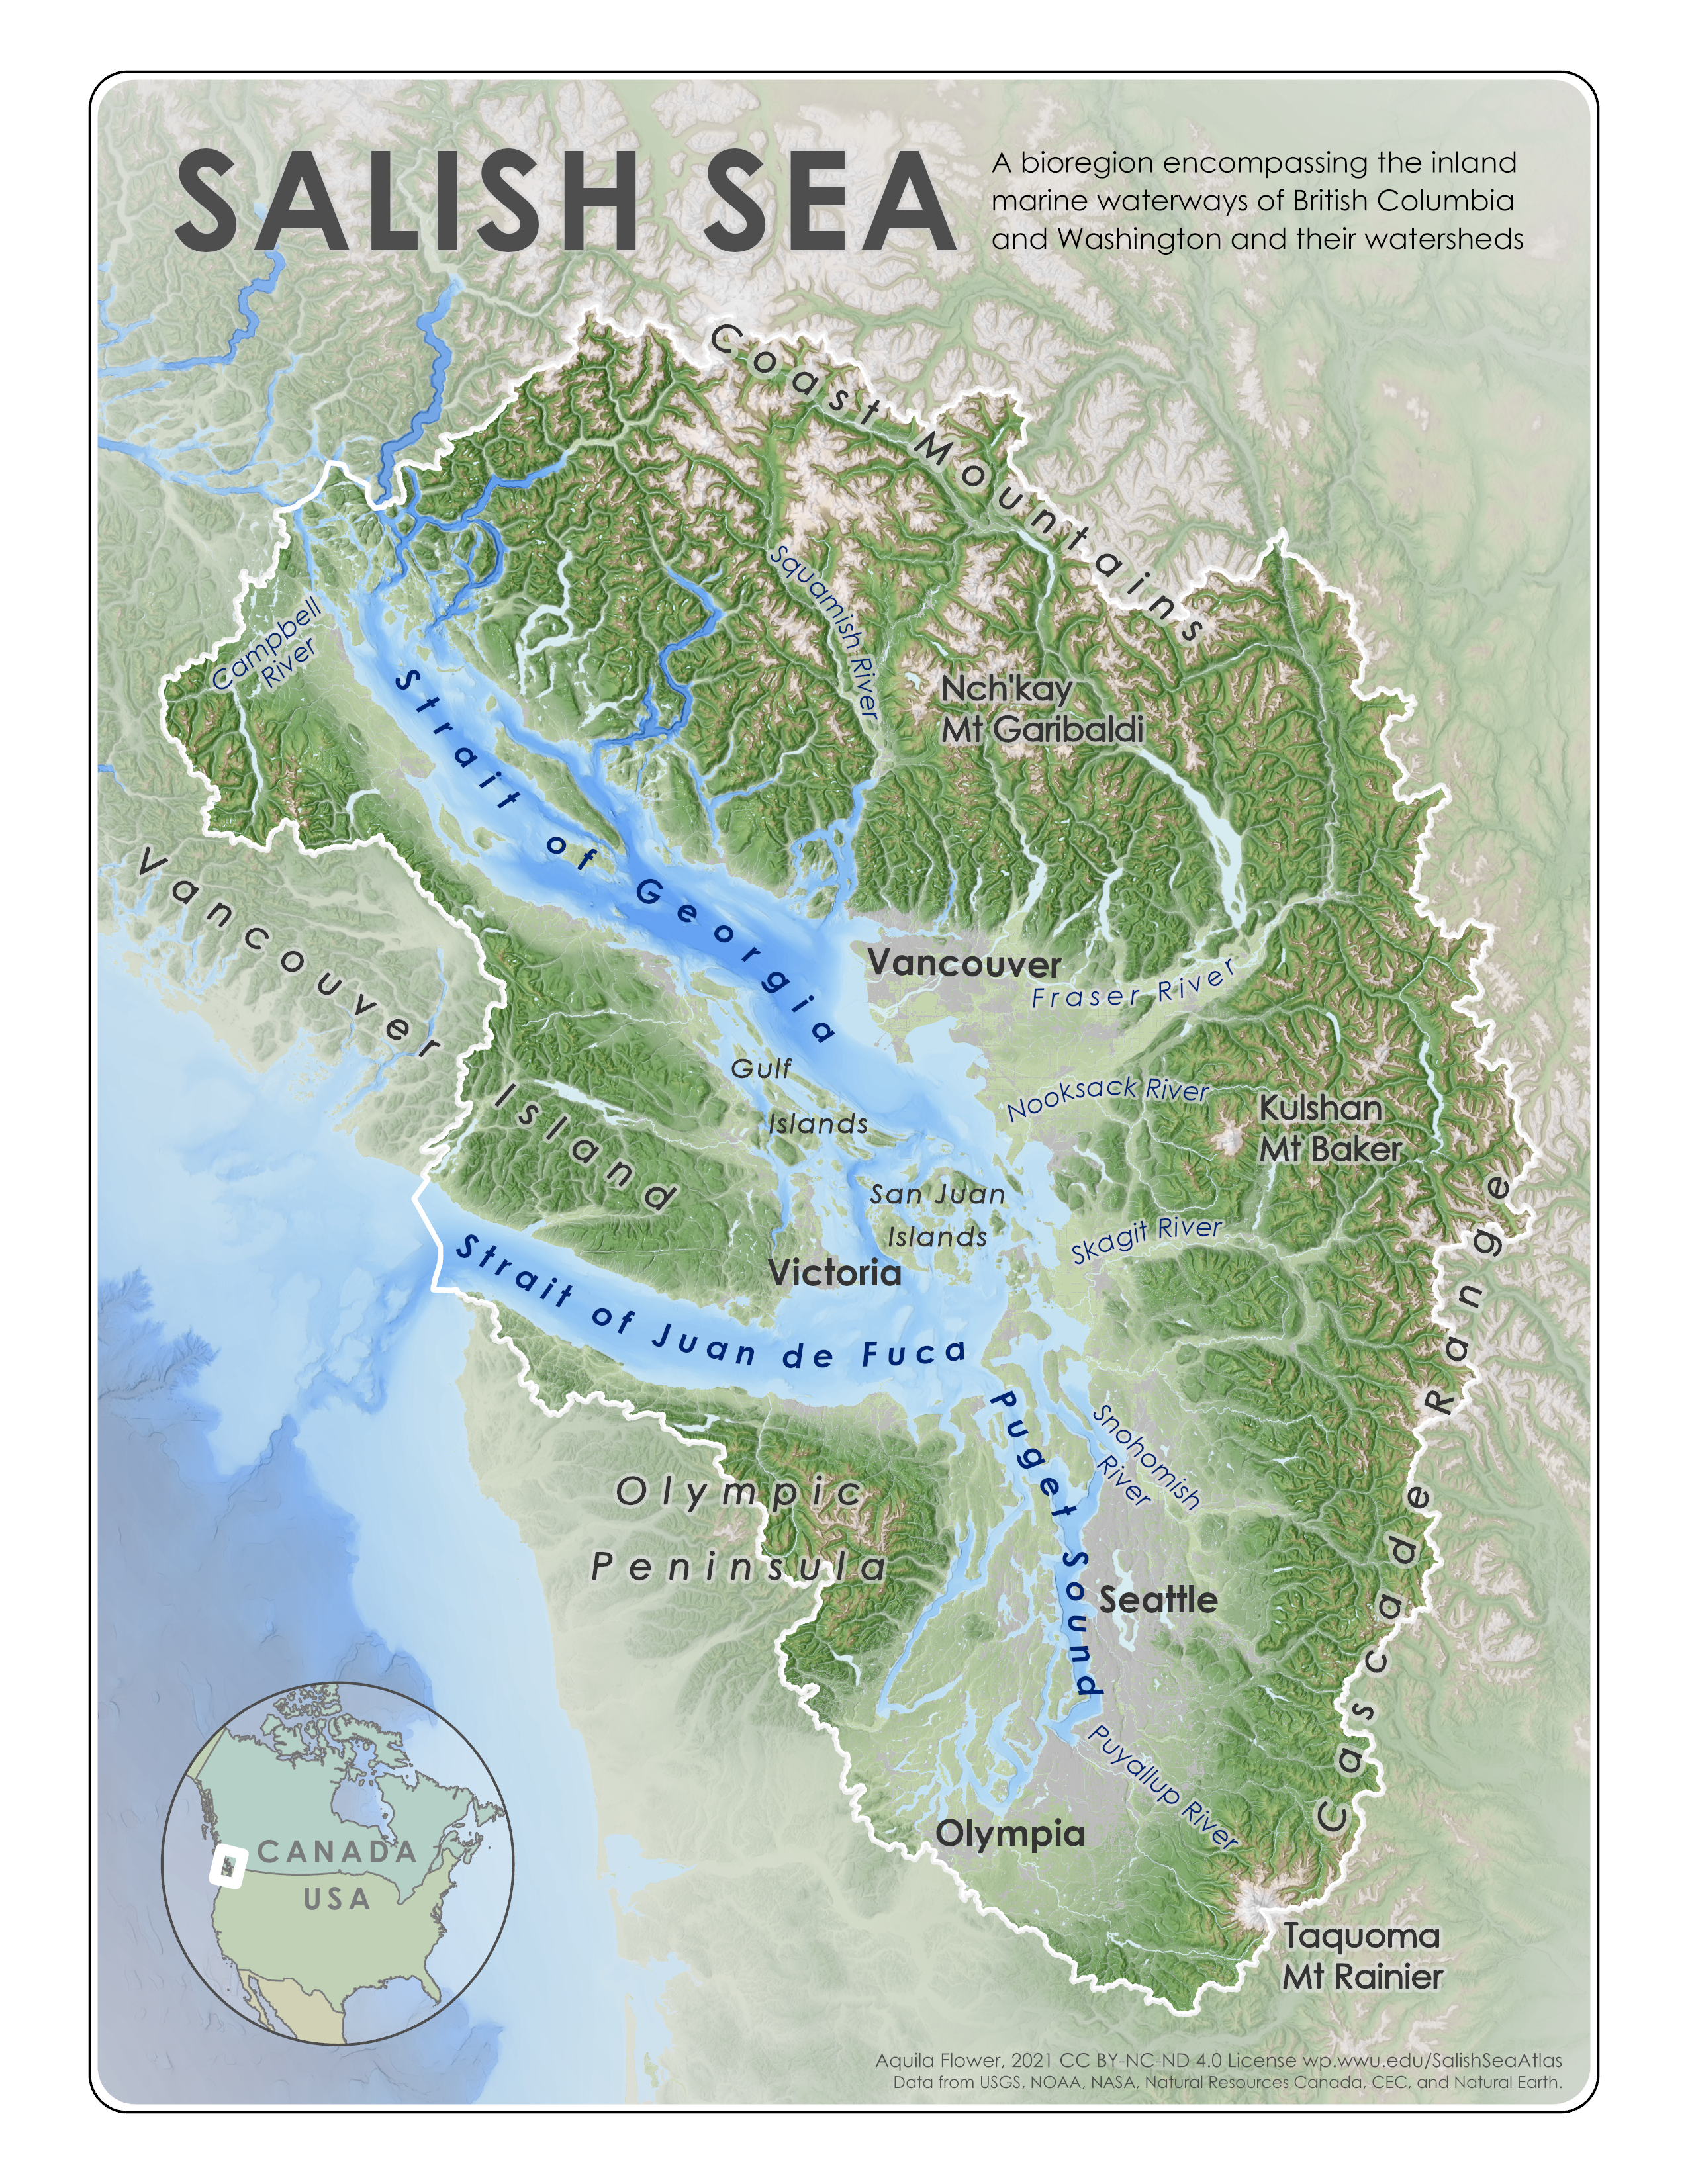 Salish Sea reference map